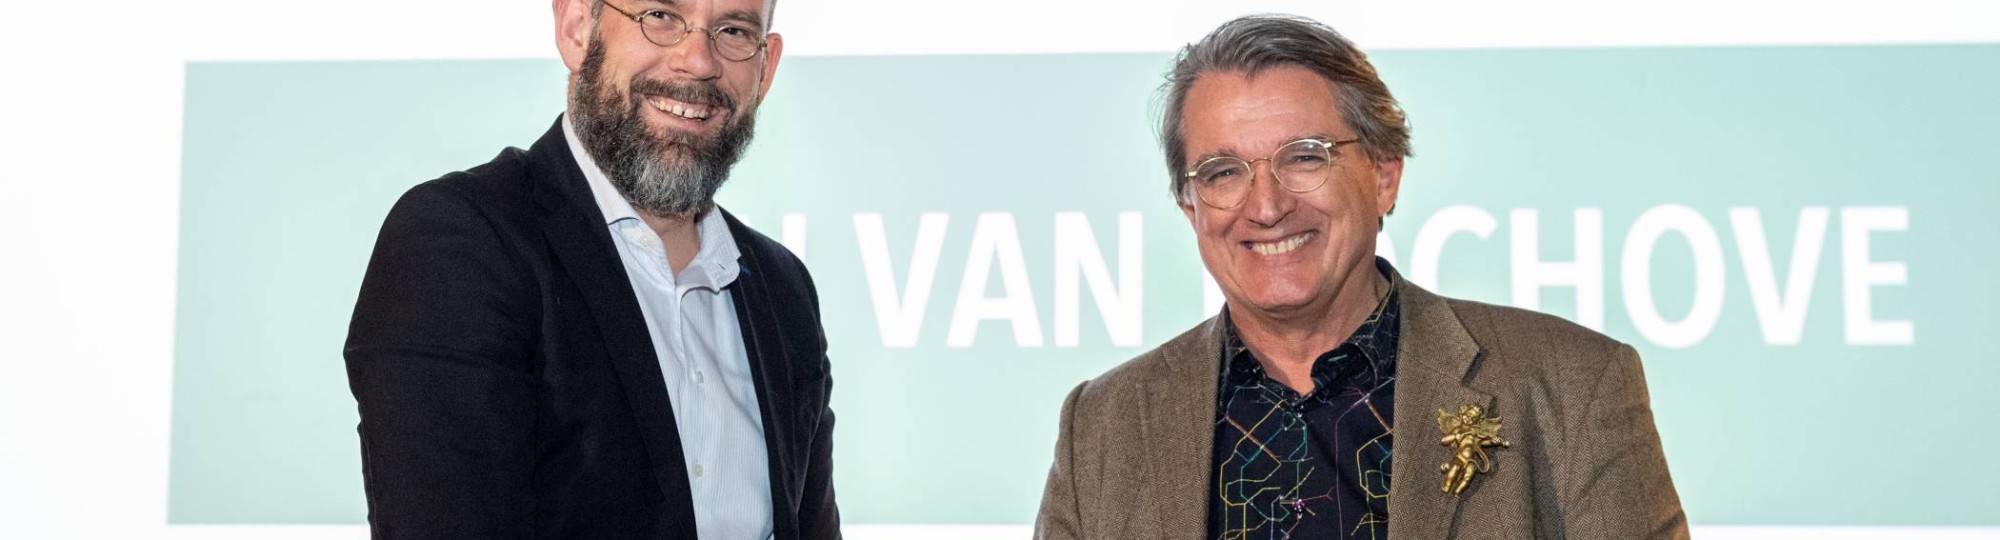 Iwan van Bochove, coördinator van het HAN Mobility Innovation Center (MIC) en een ervaren industrieel ontwerper, heeft de HAN Green Award 2023 ontvangen in de categorie Toekomstgerichte Initiatiefnemer.